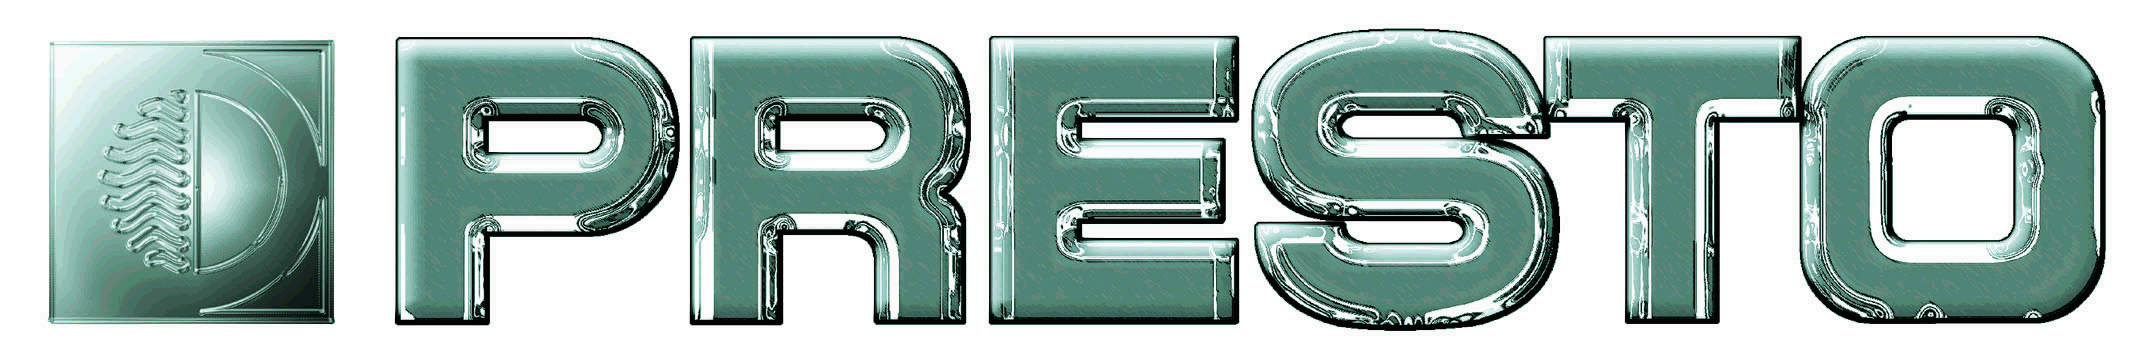 Logo de Presto (robinetterie)